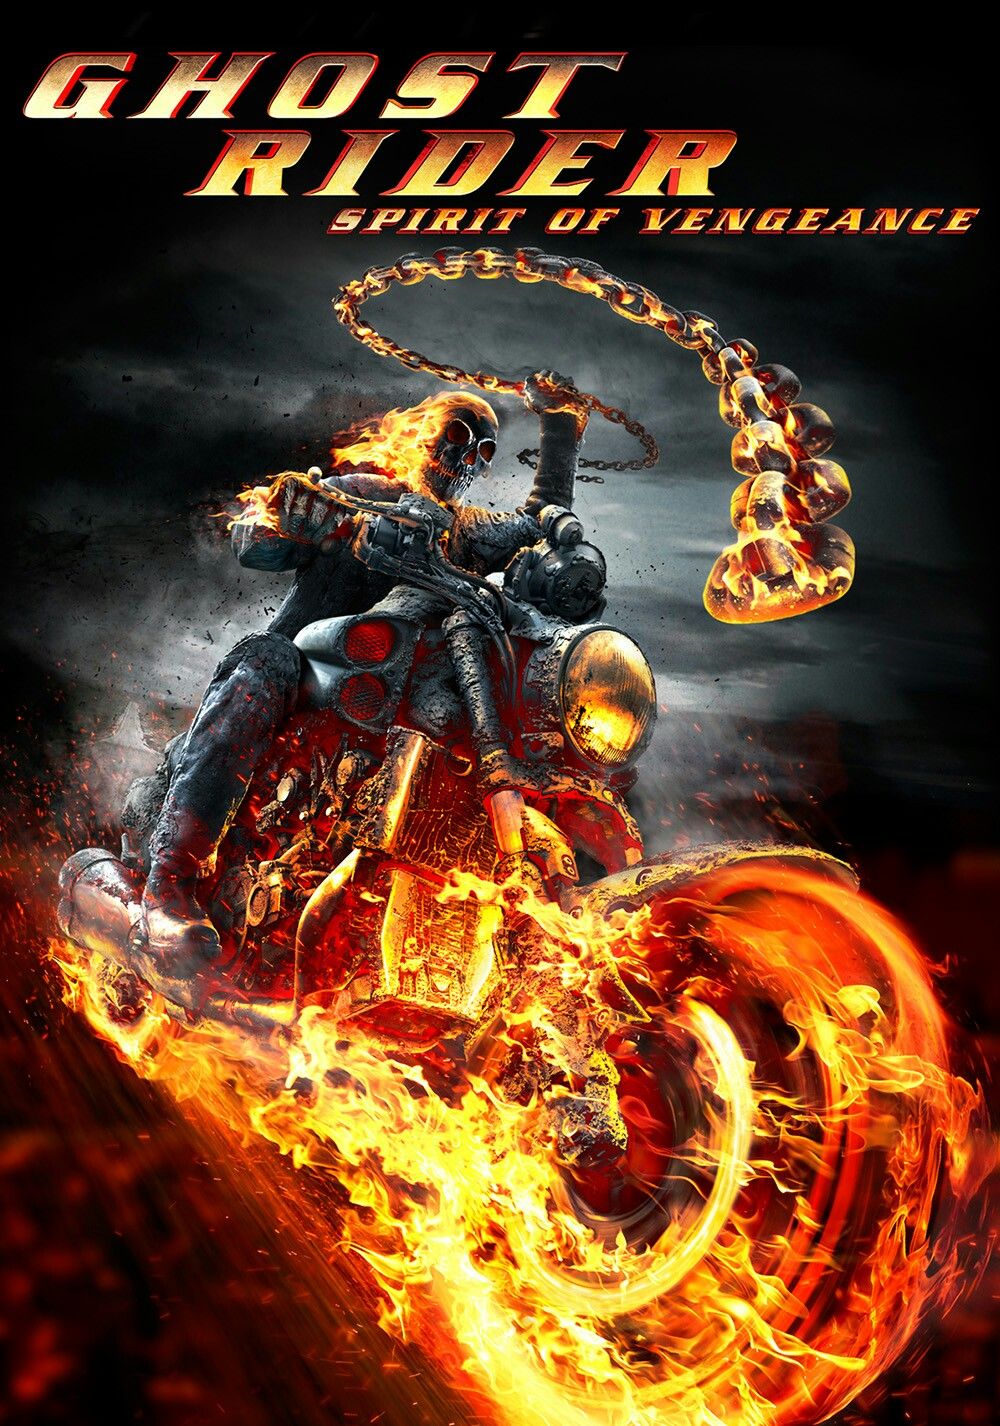 FULL MOVIE: Ghost Rider: Spirit Of Vengeance (2012) [Action]